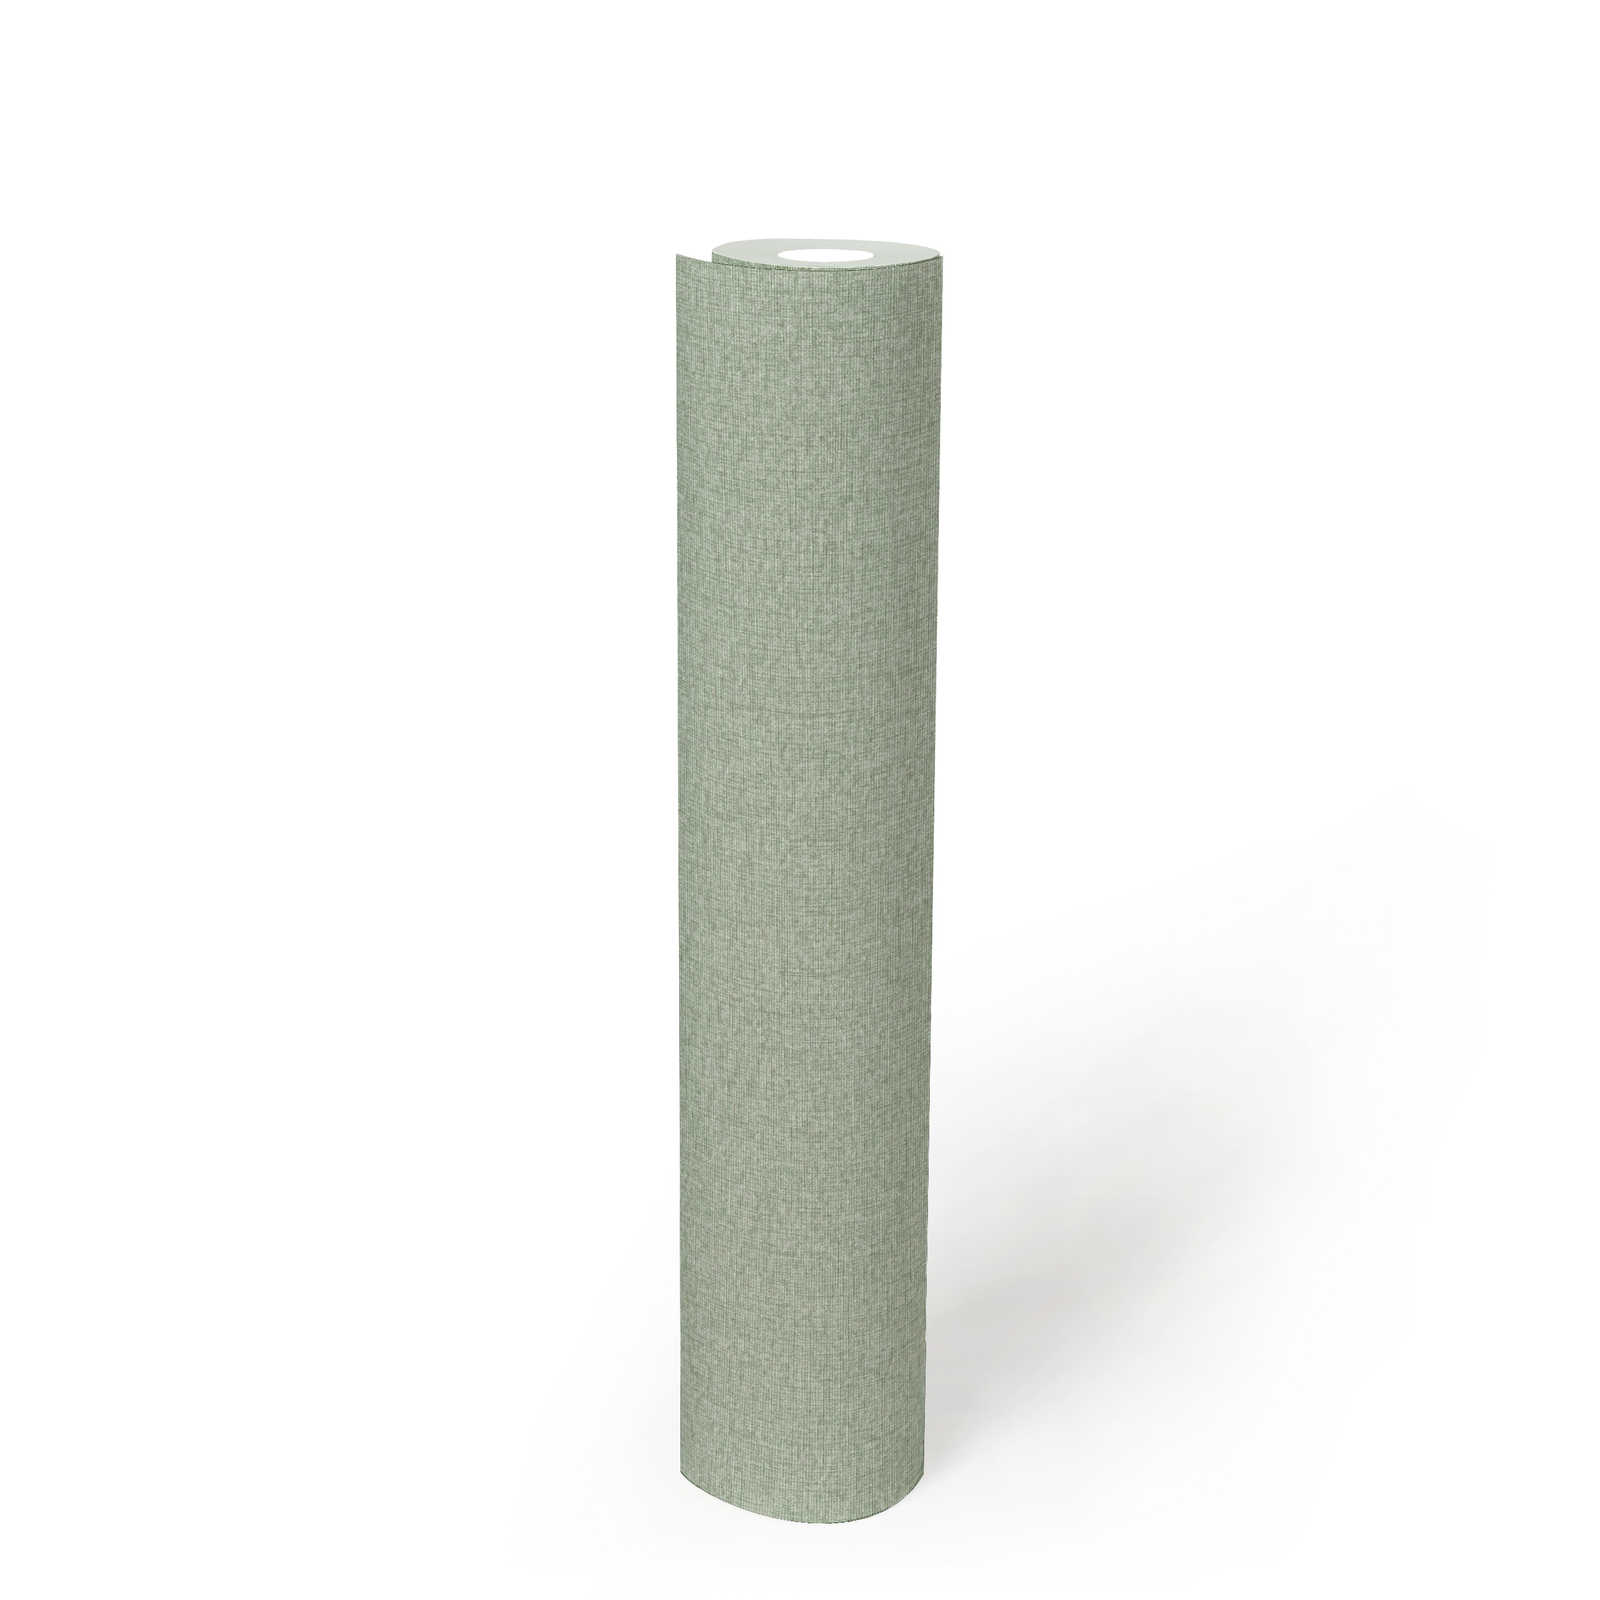             Einfarbige Tapete in Gewebe-Optik mit leichter Struktur, matt – Grün
        